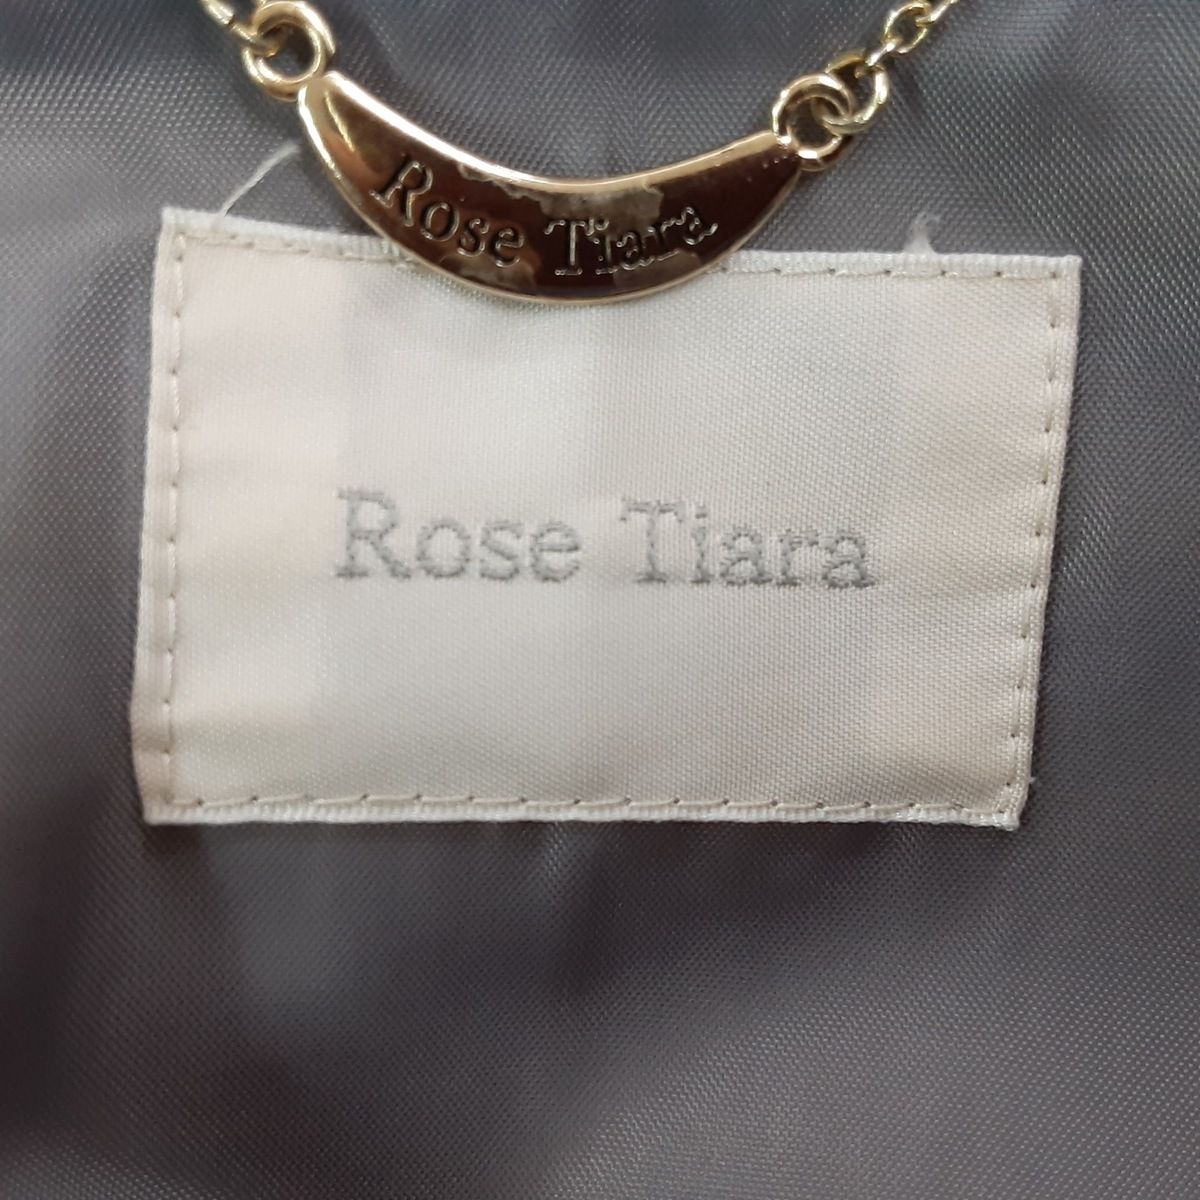 Rose Tiara(ローズティアラ) ダウンコート サイズ42 L レディース美品